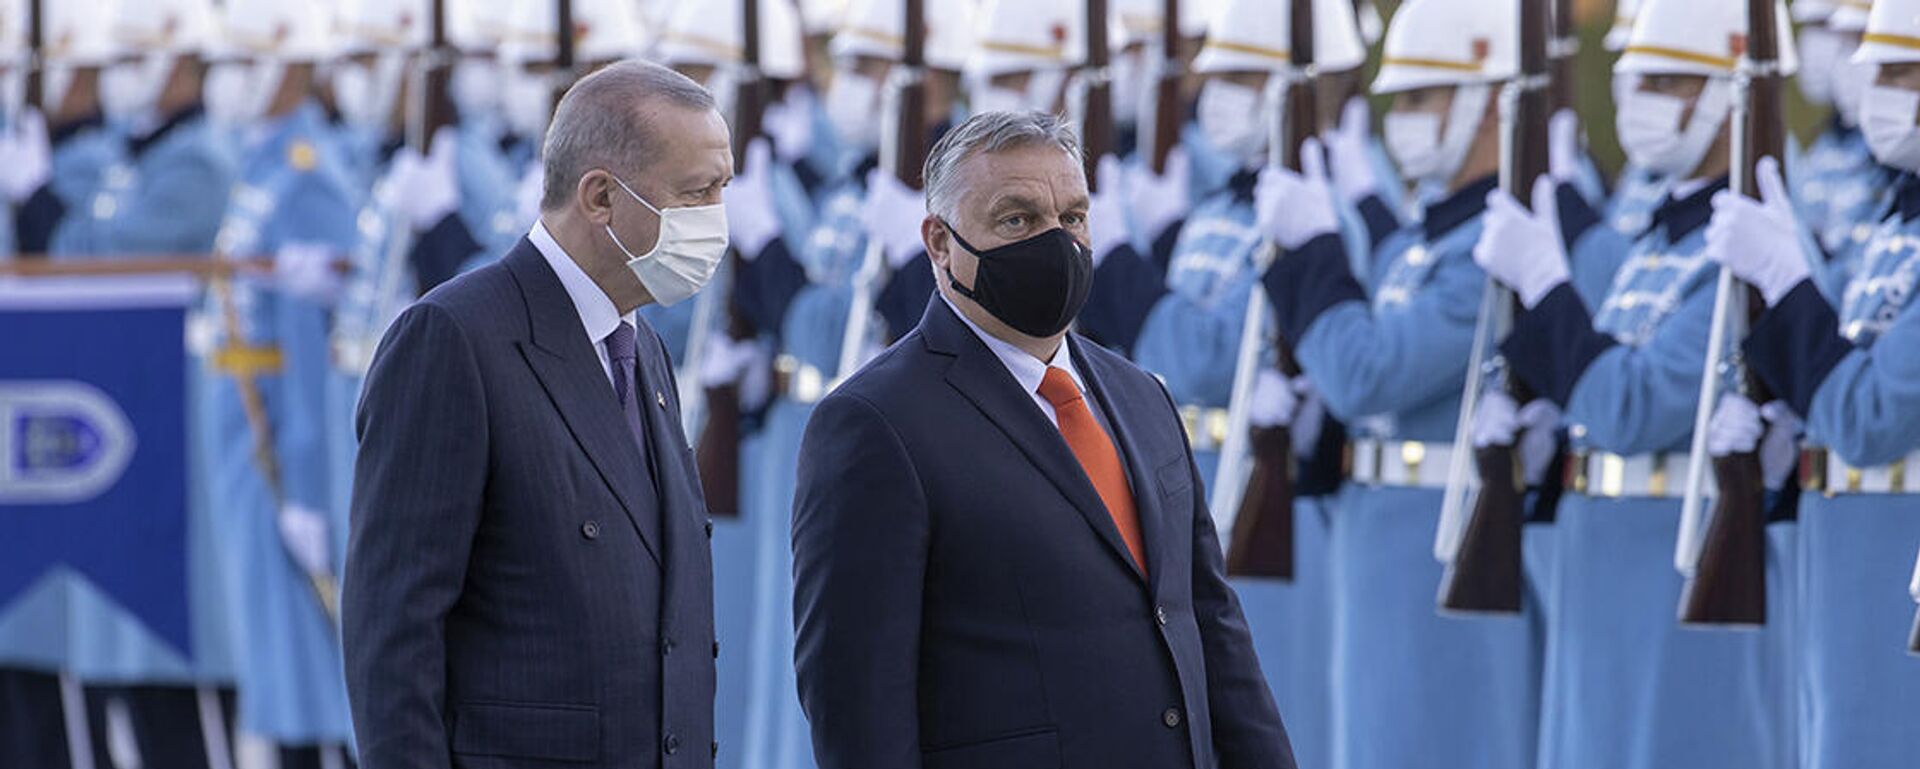 Cumhurbaşkanı Erdoğan, Macaristan Başbakanı Orban'ı resmi törenle karşıladı - Sputnik Türkiye, 1920, 11.11.2021